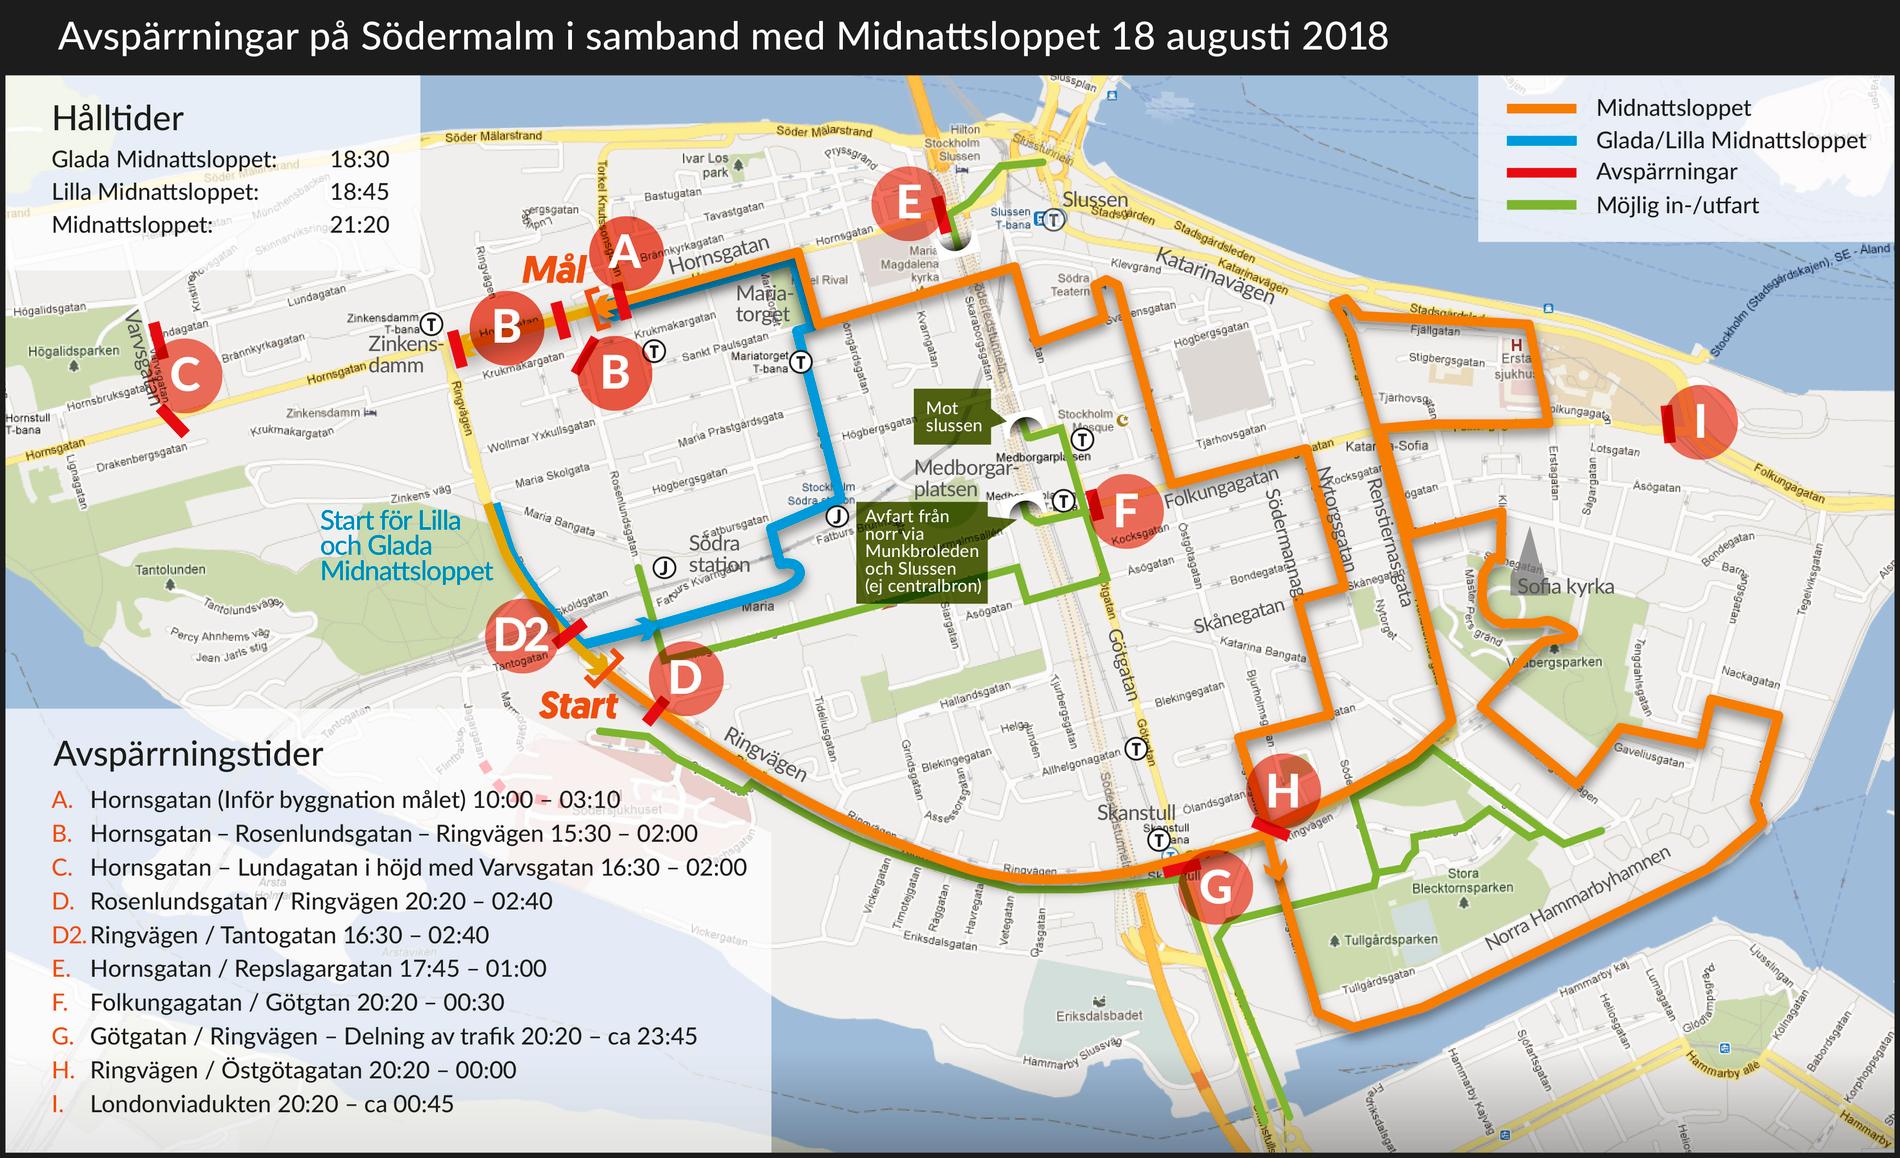 Avspärrningar i centrala Stockholm med anledning av Midnattsloppet. Pressbild.